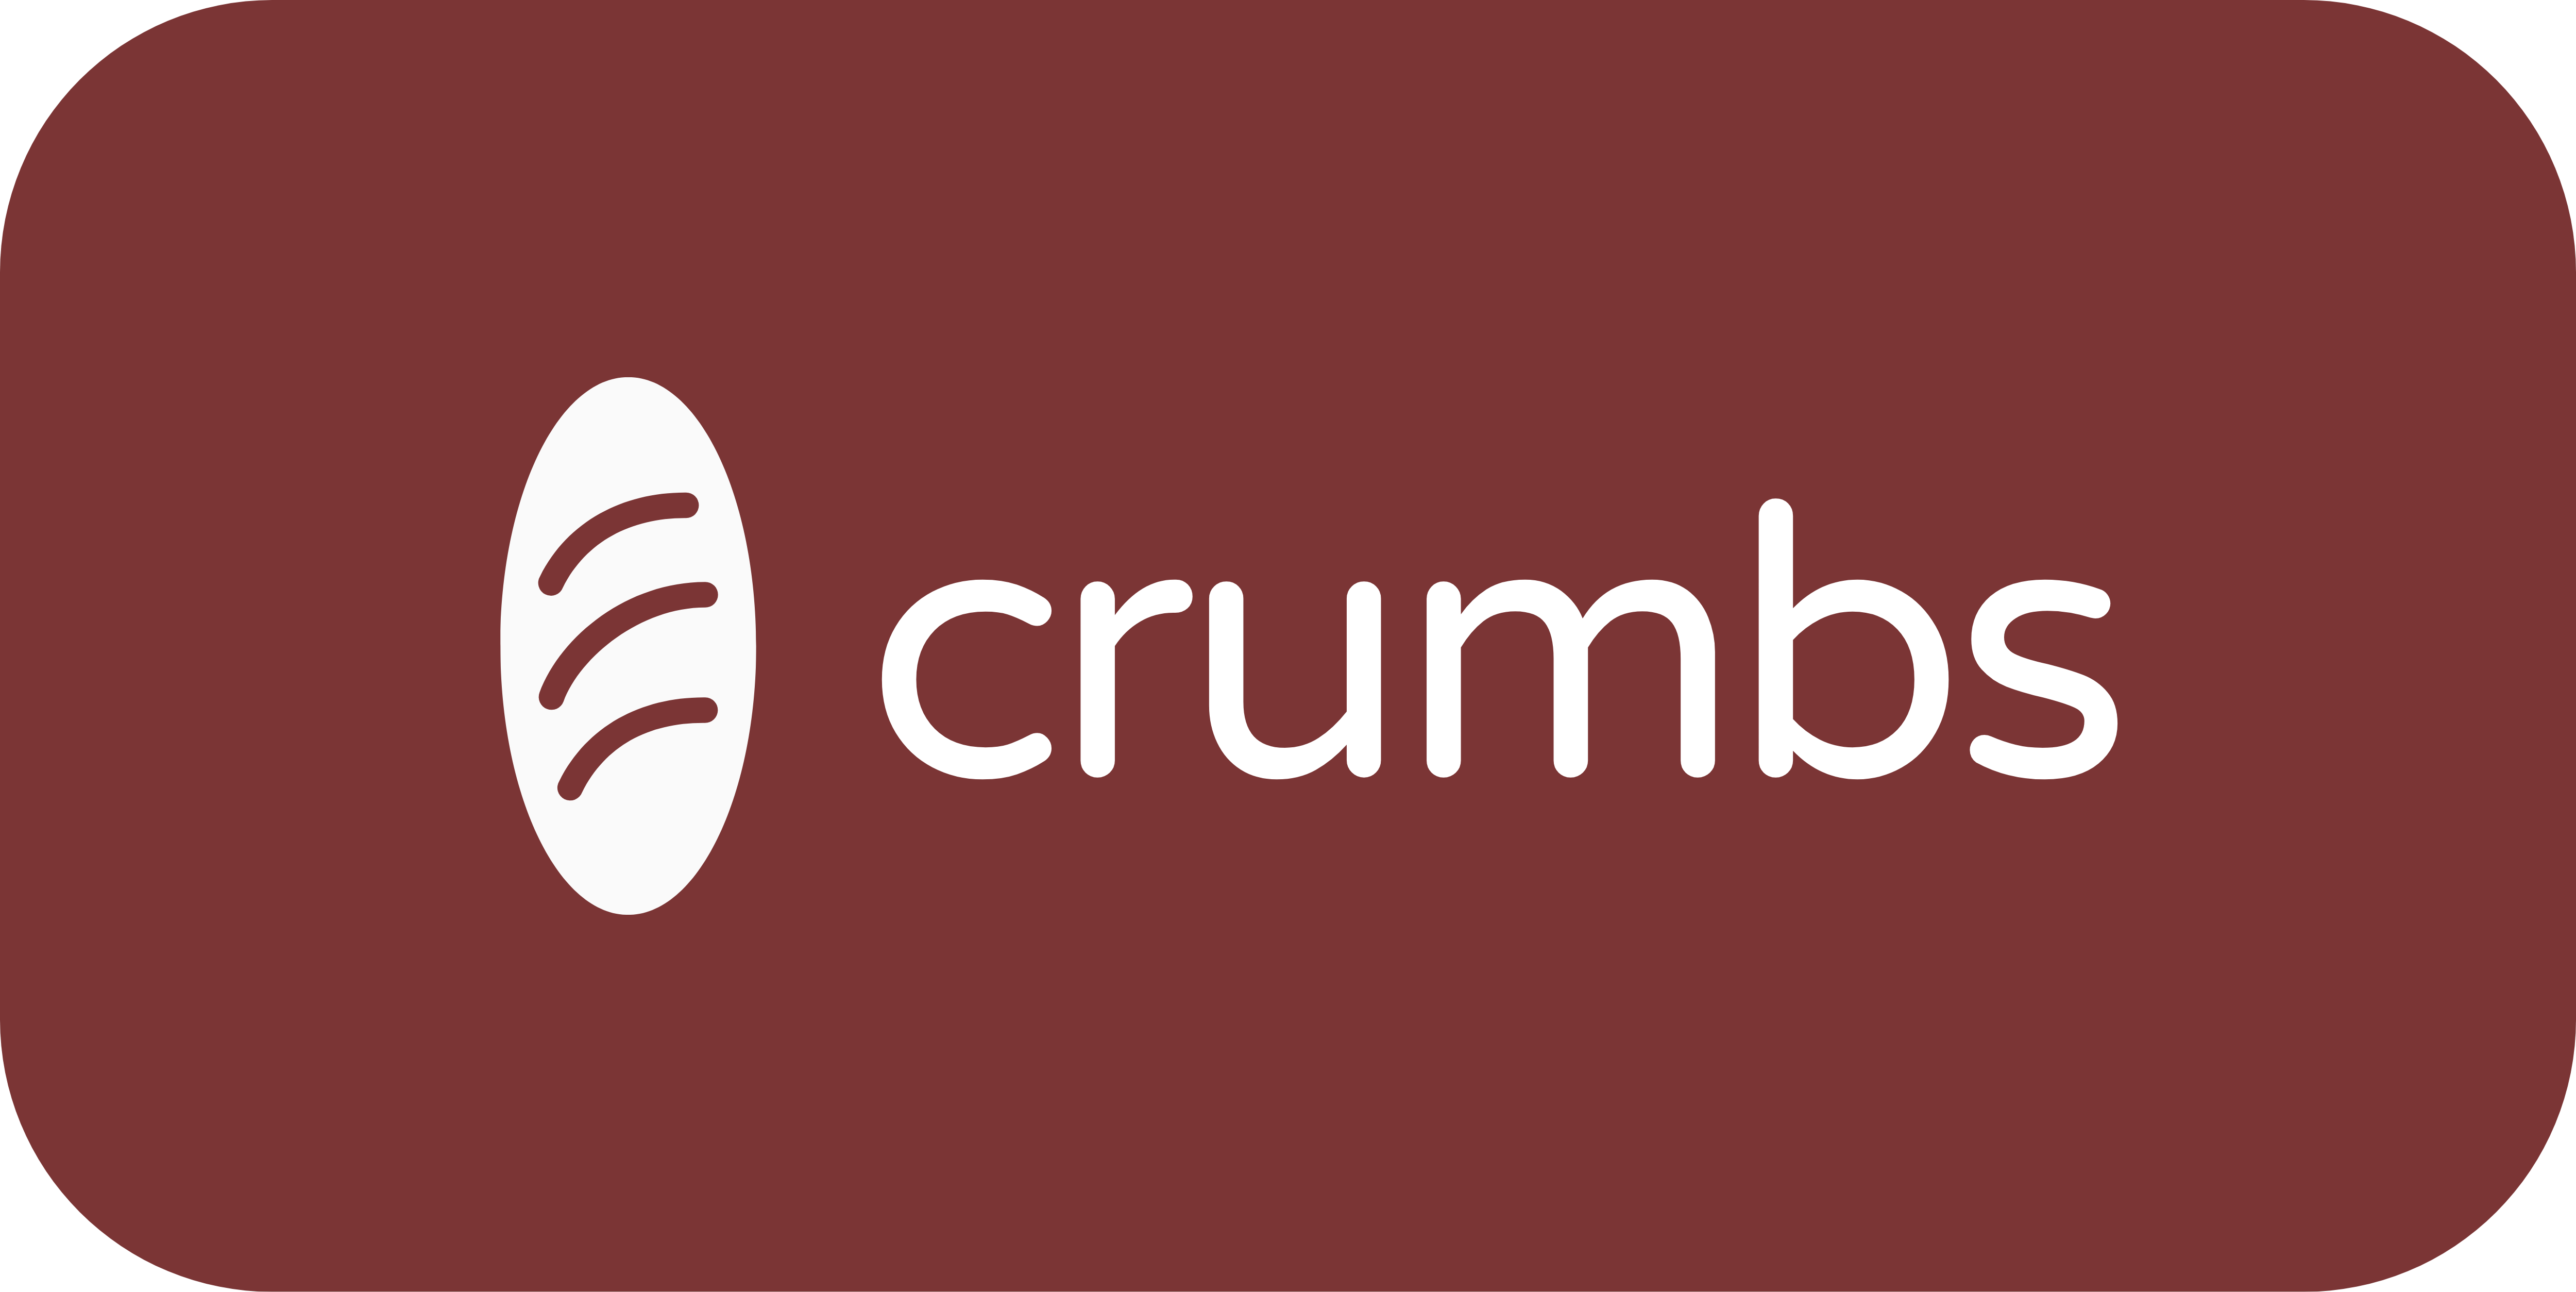 Crumbs Cafe